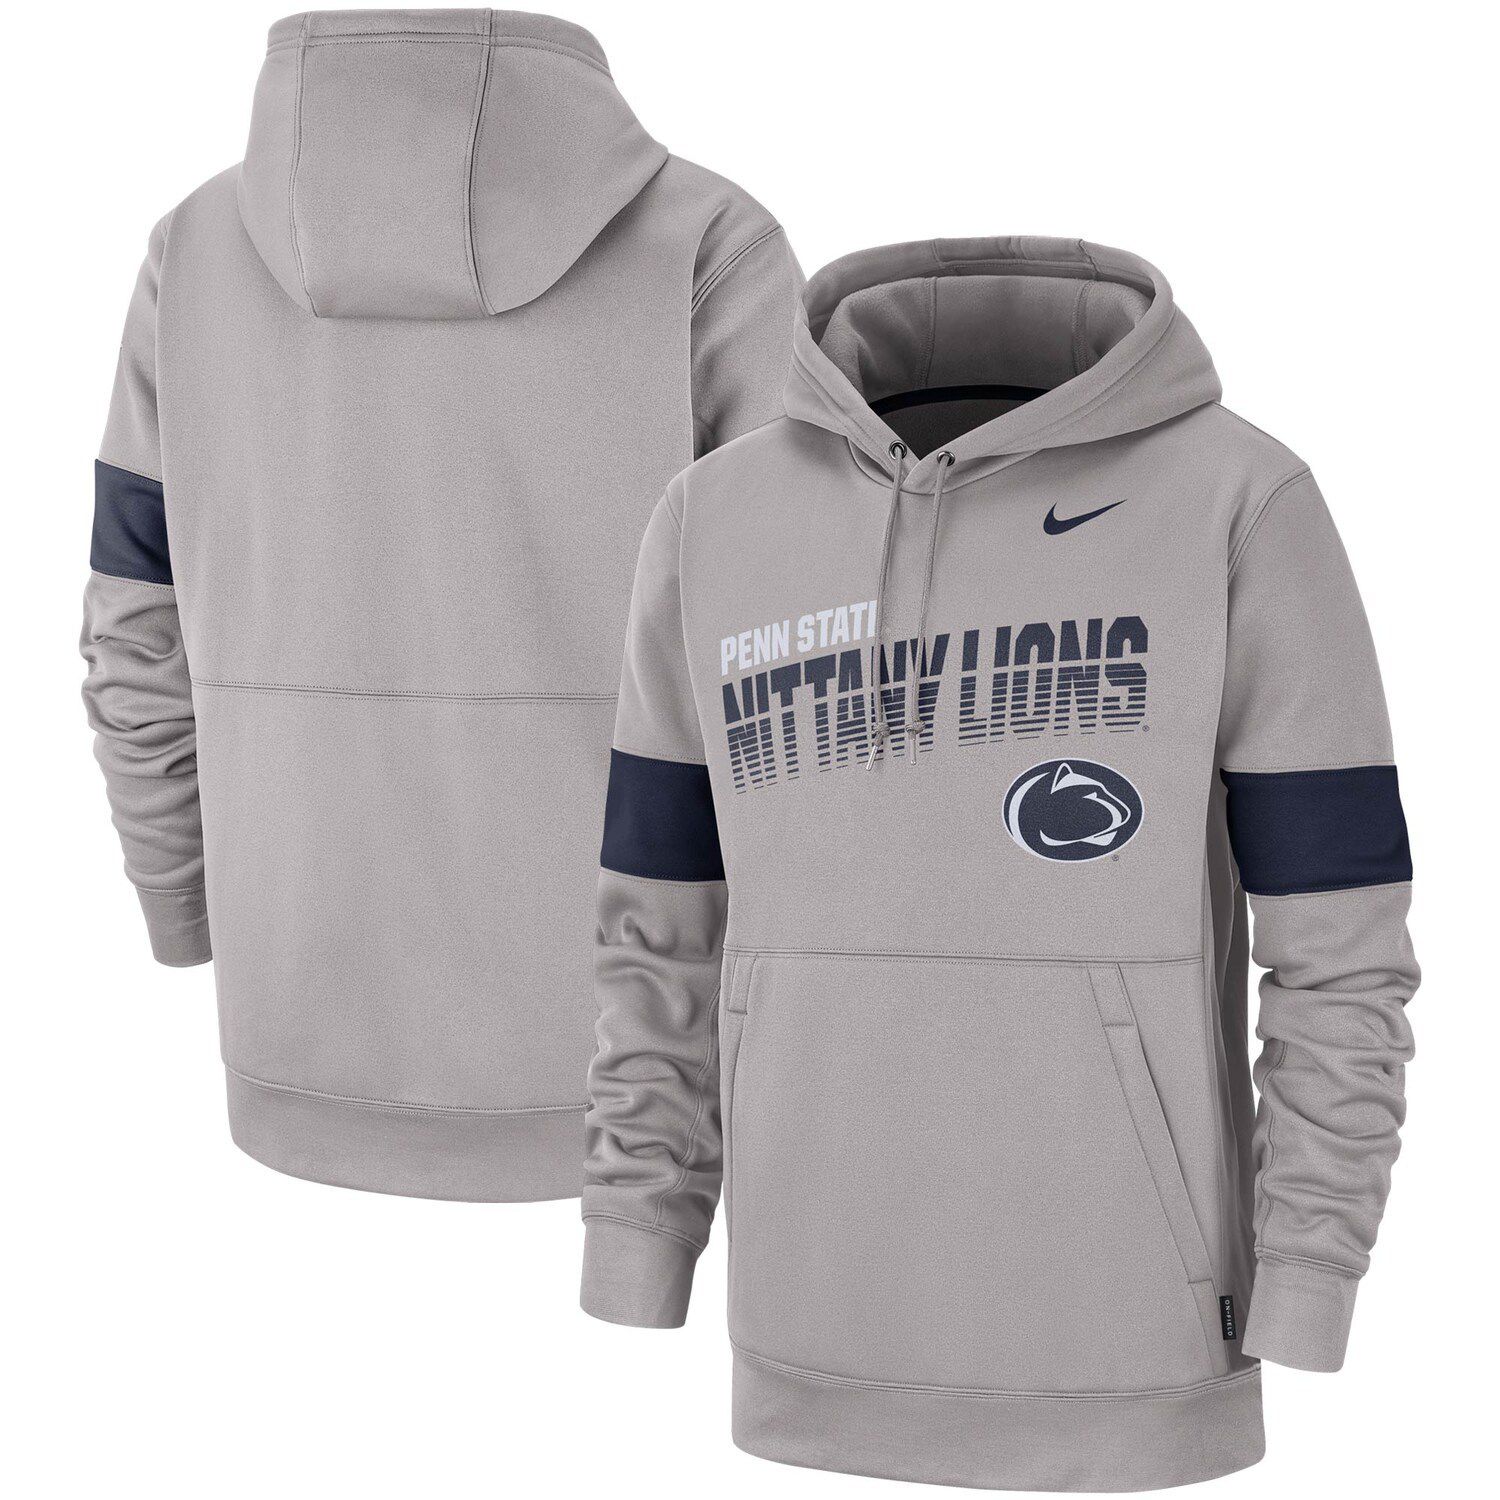 penn state sideline hoodie